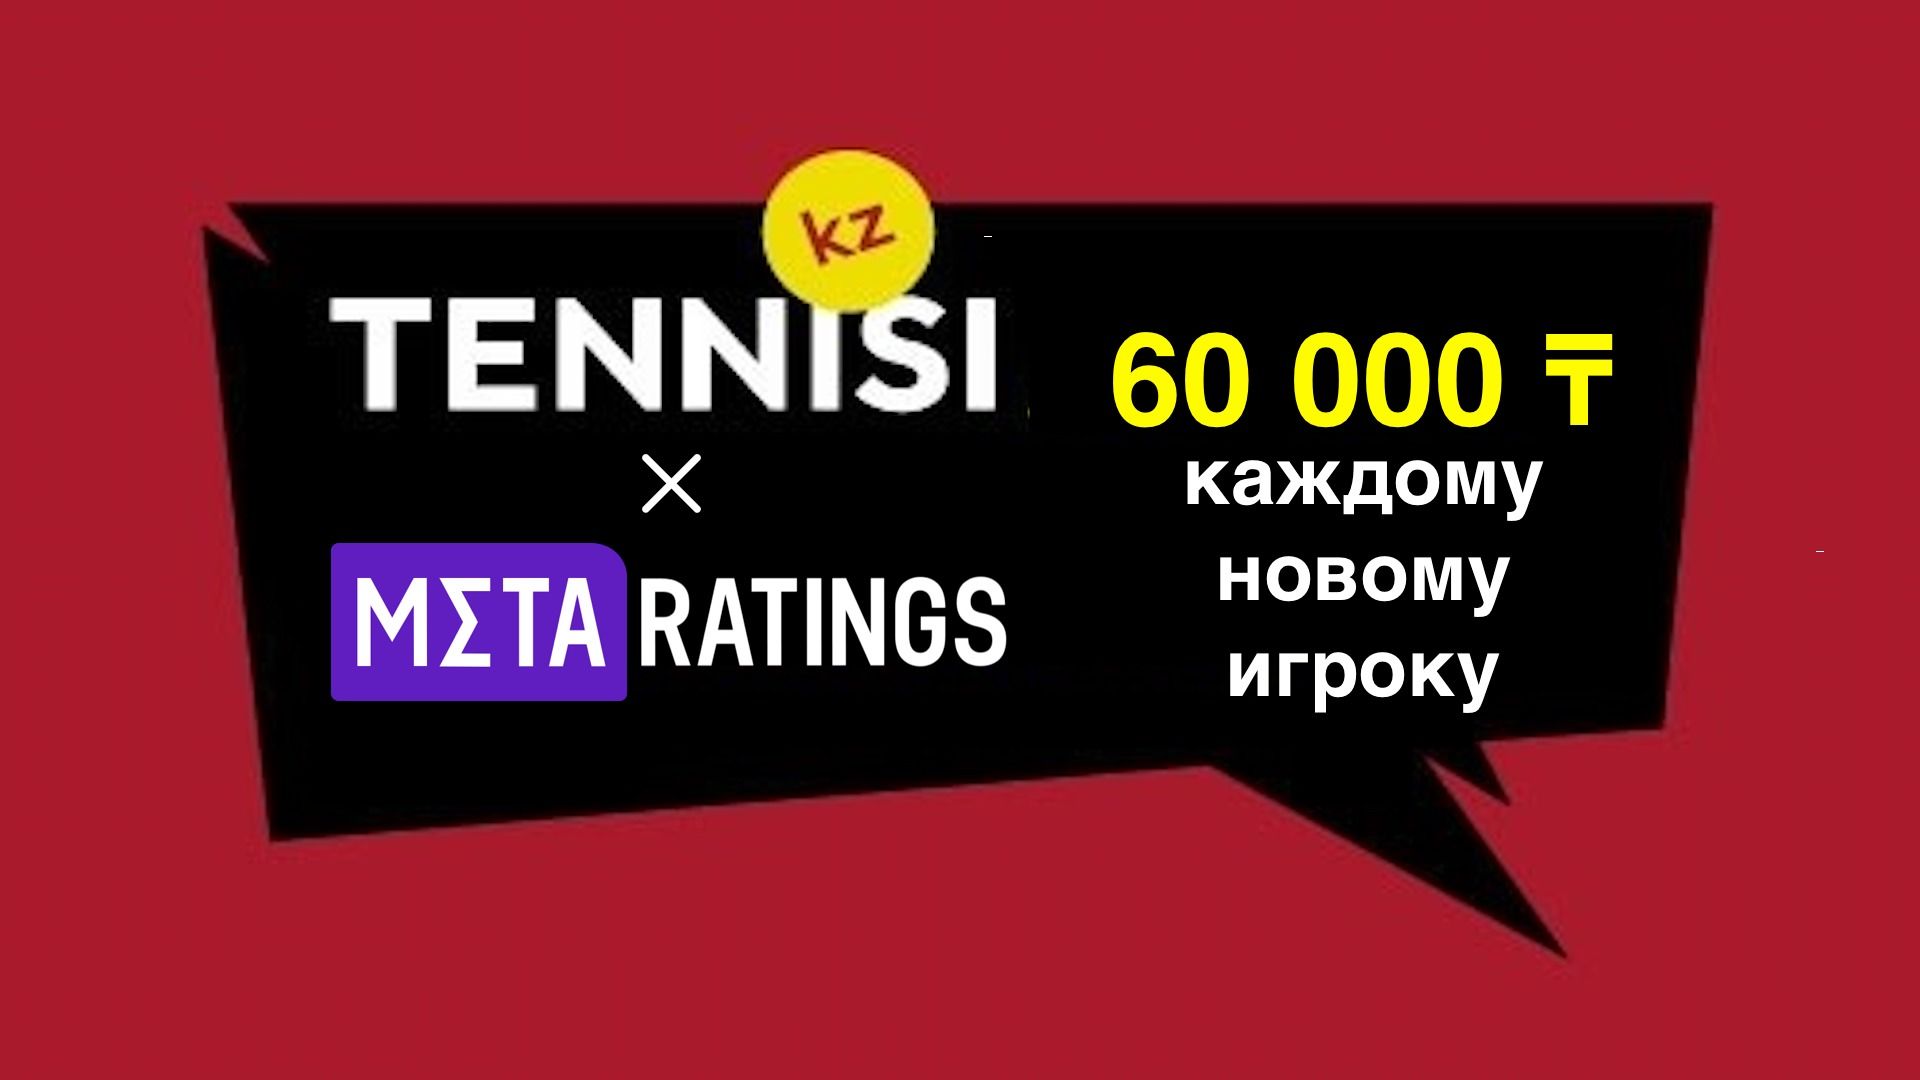 До 60 000 тенге всем новым игрокам БК Тенниси